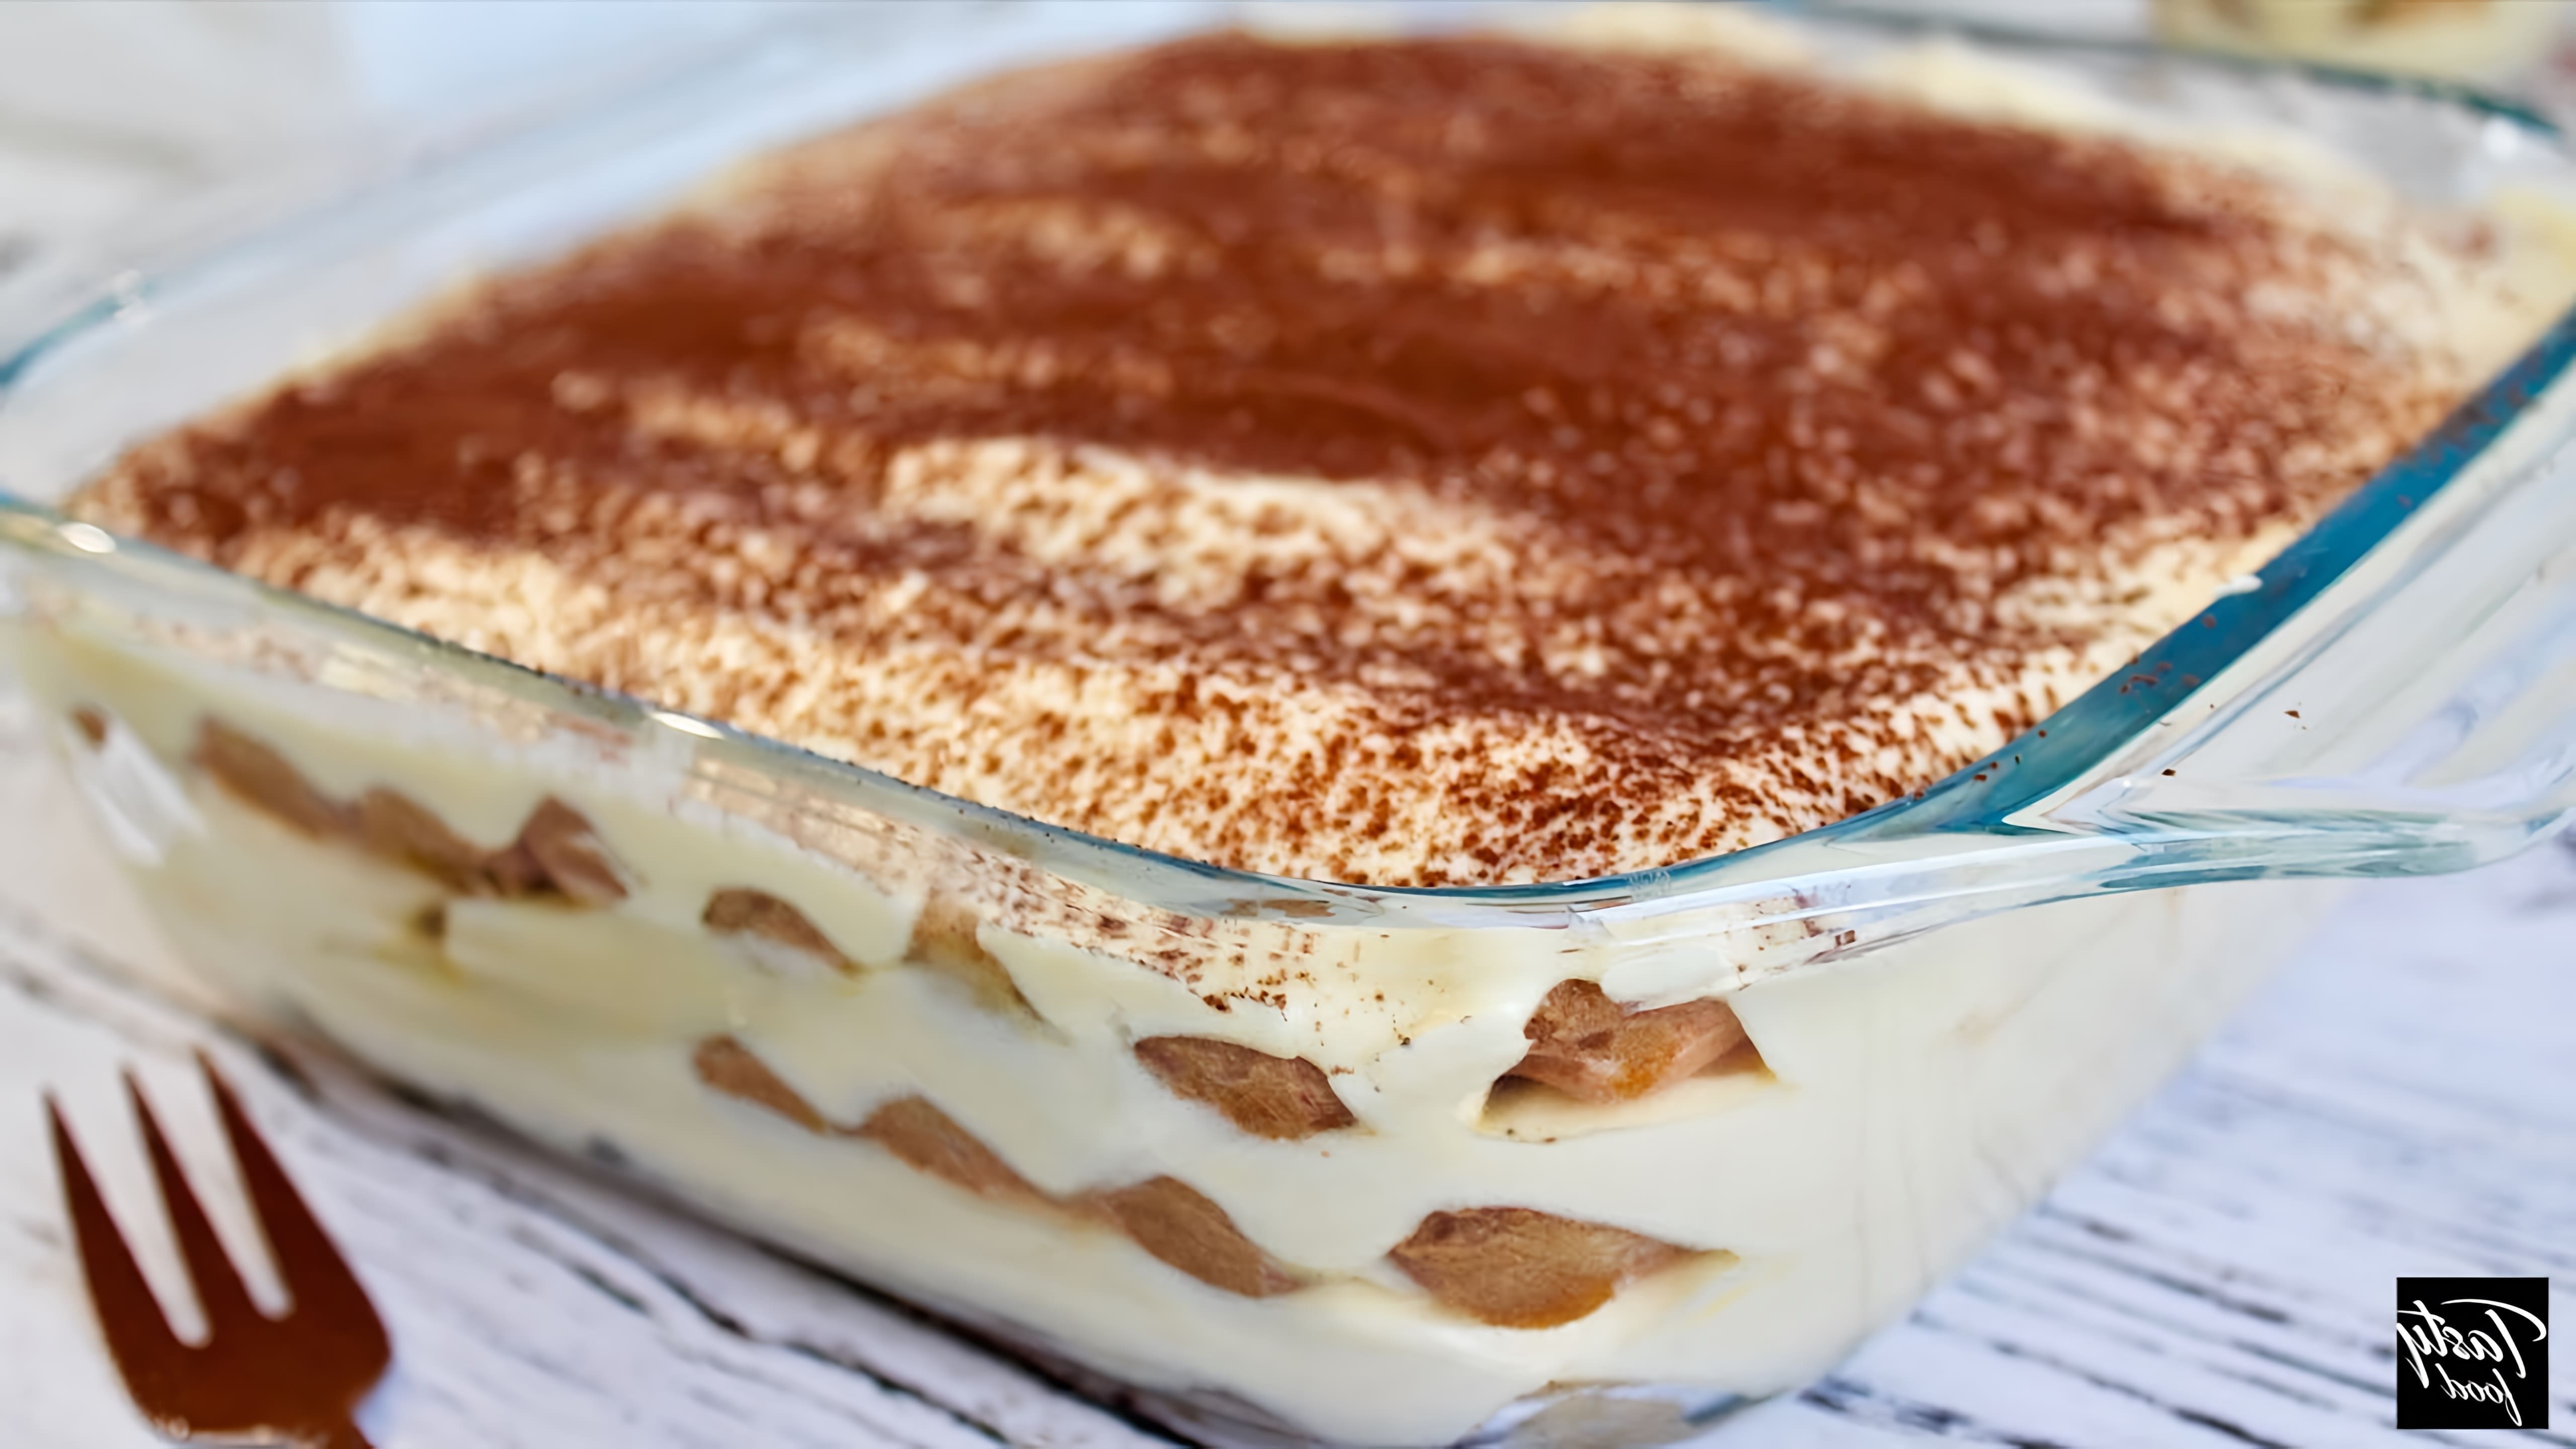 В этом видео демонстрируется рецепт приготовления тирамису, популярного итальянского десерта